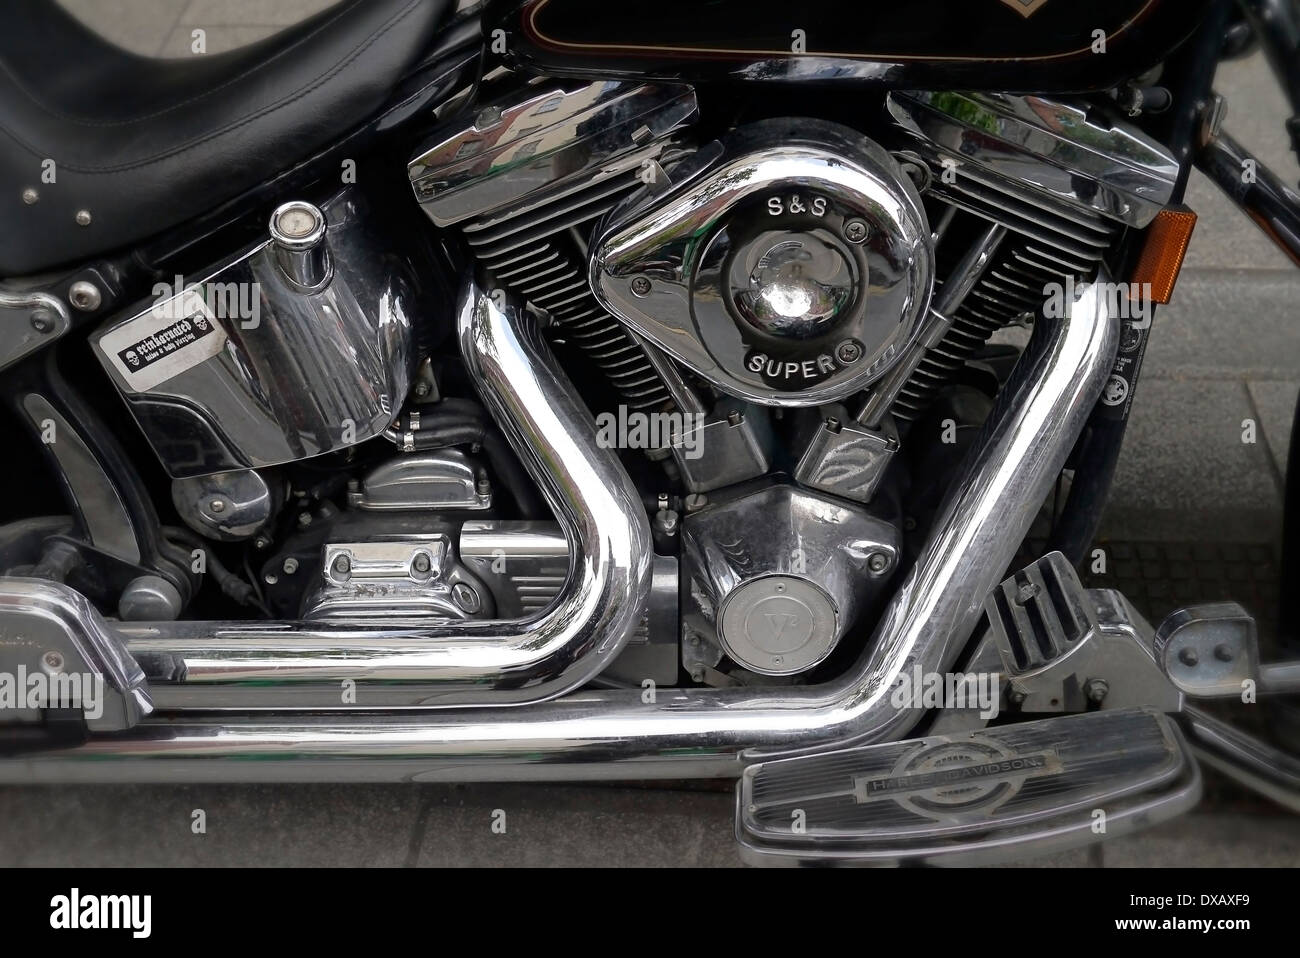 Harley Davidson Motorradmotor hautnah Stockfoto